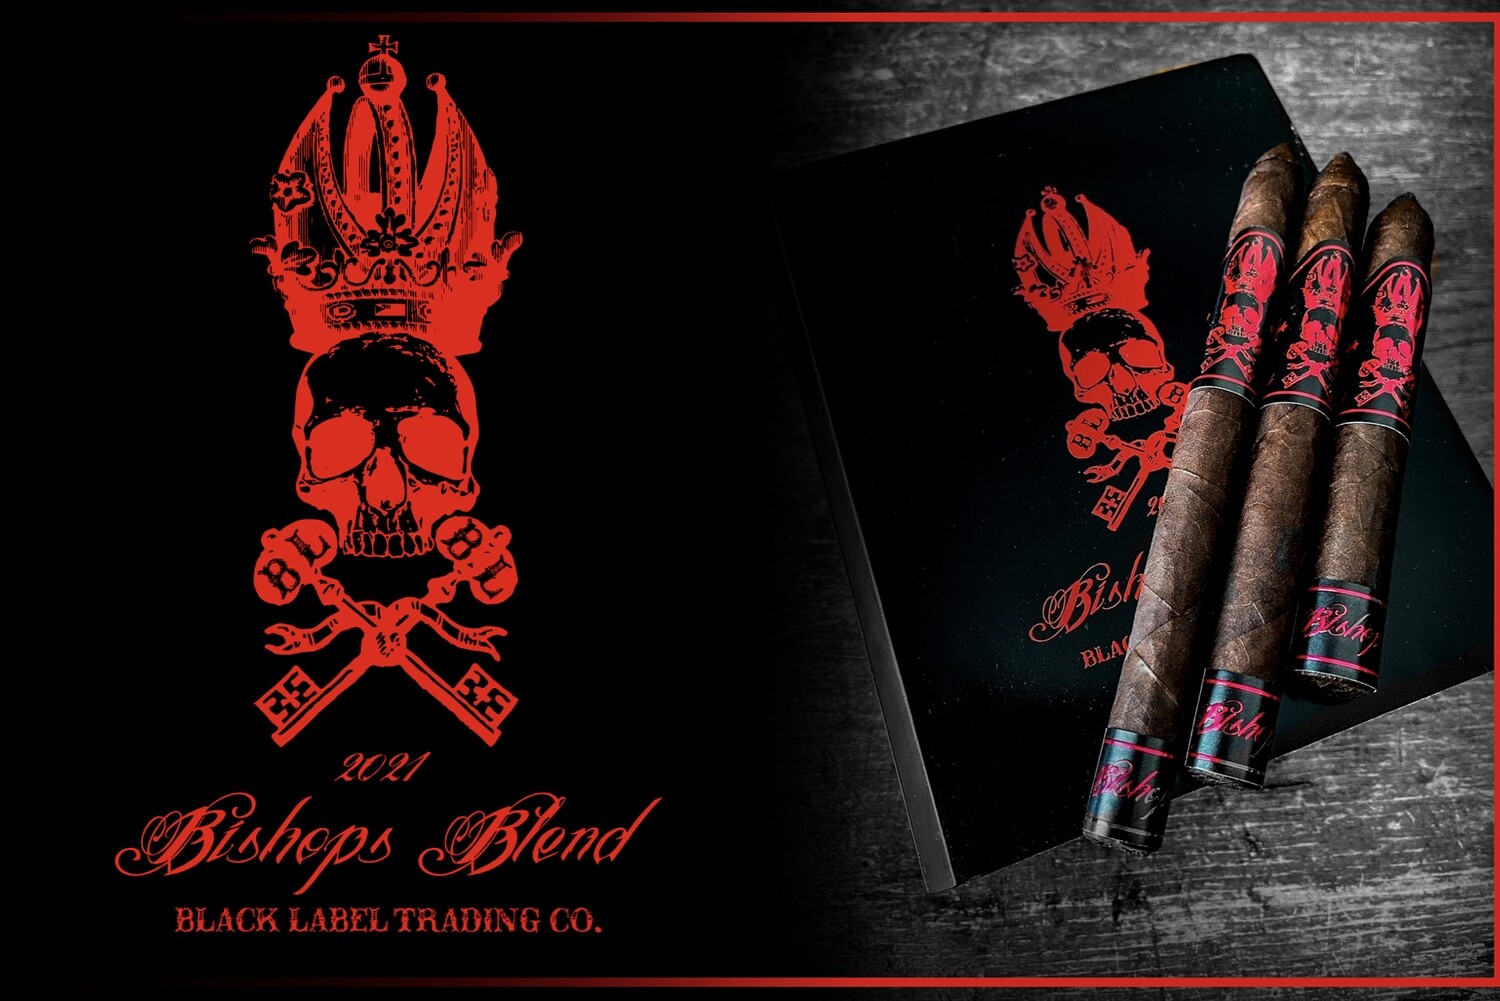 Black Label BISHOPS BLEND LANCERO (SPECIAL RELEASE) 7 x 42 Single Cigar